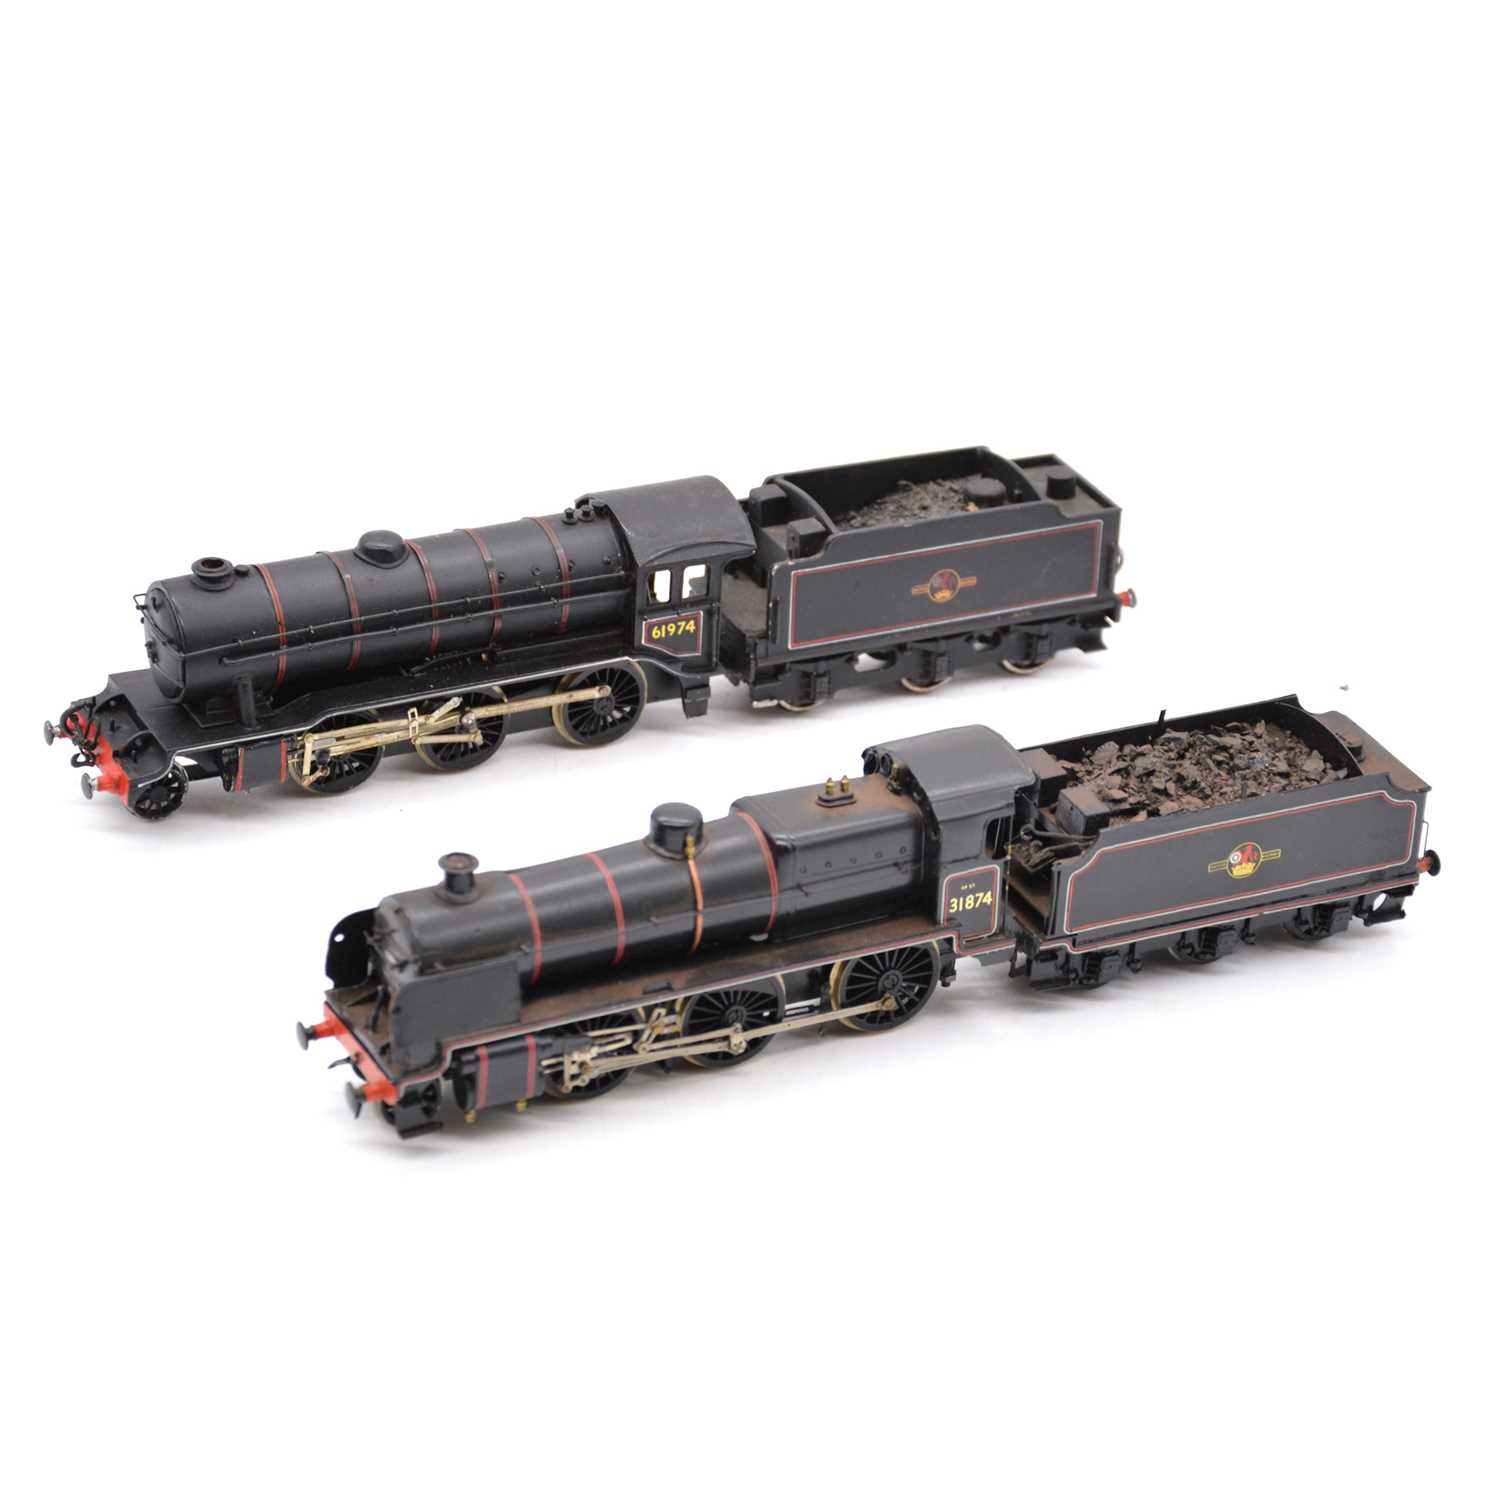 Lot 133 - Two Kit-built OO gauge model railway steam locomotives with tenders